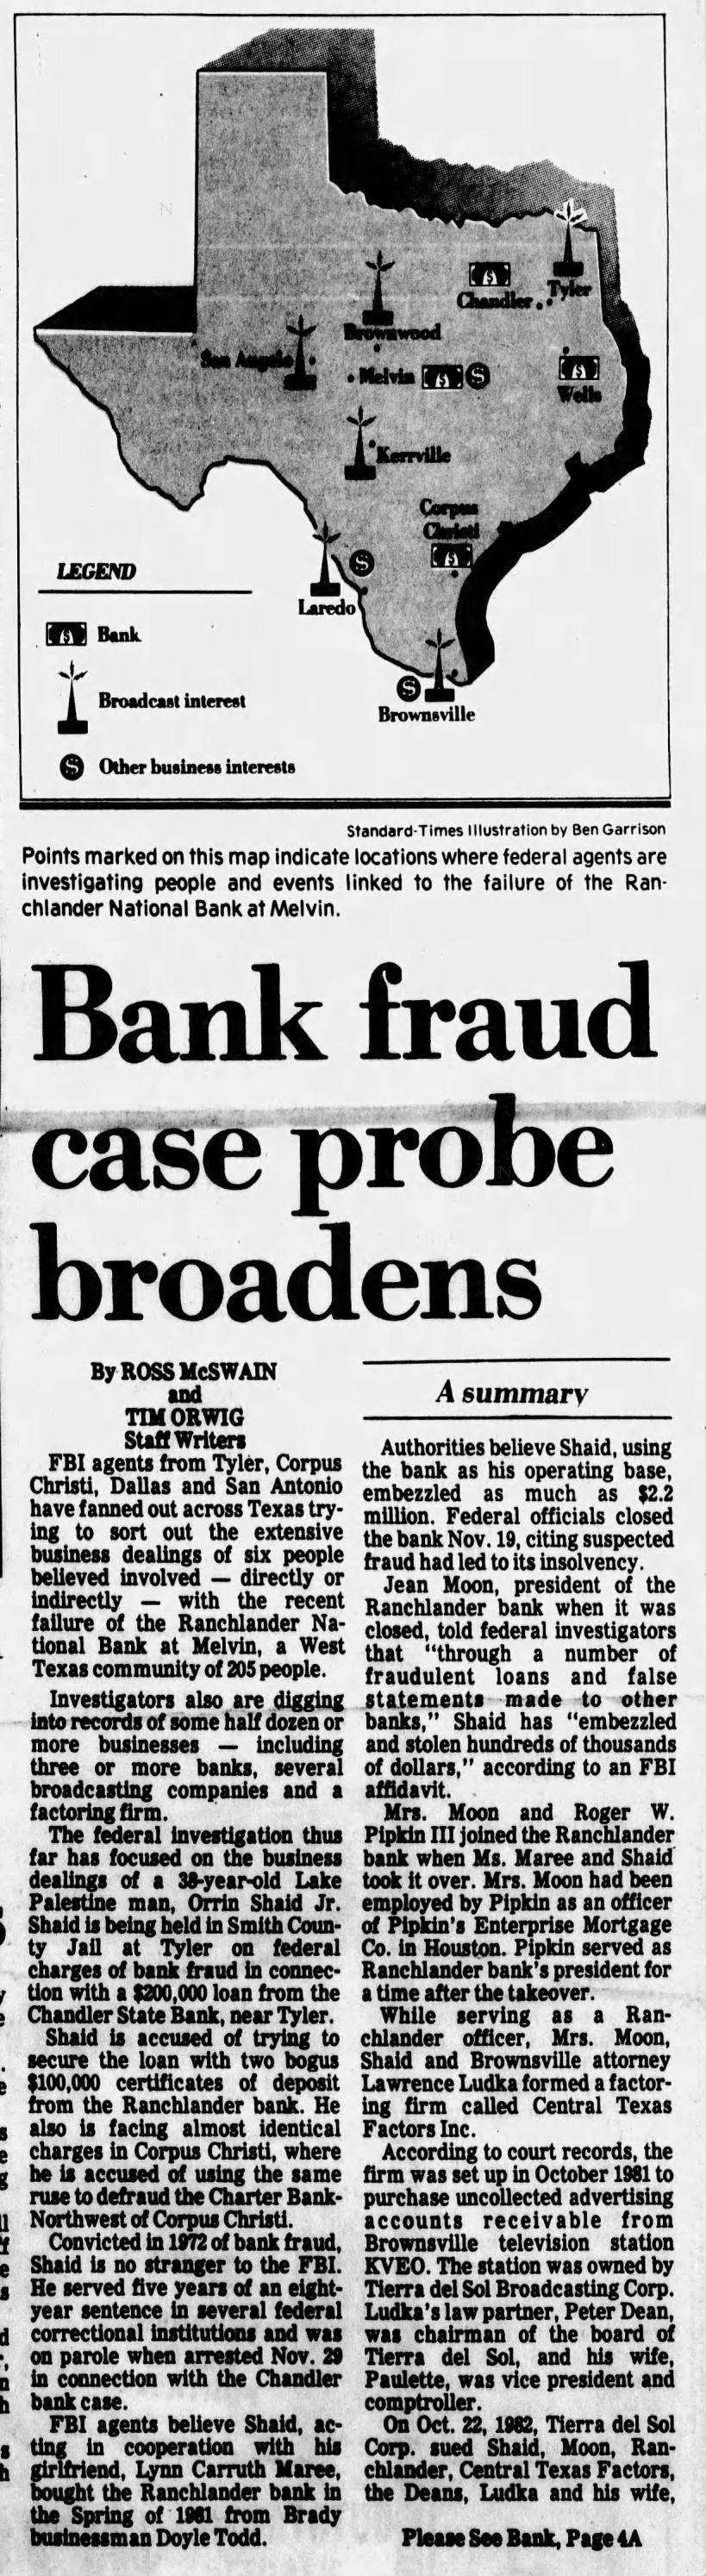 Bank fraud probe case broadens